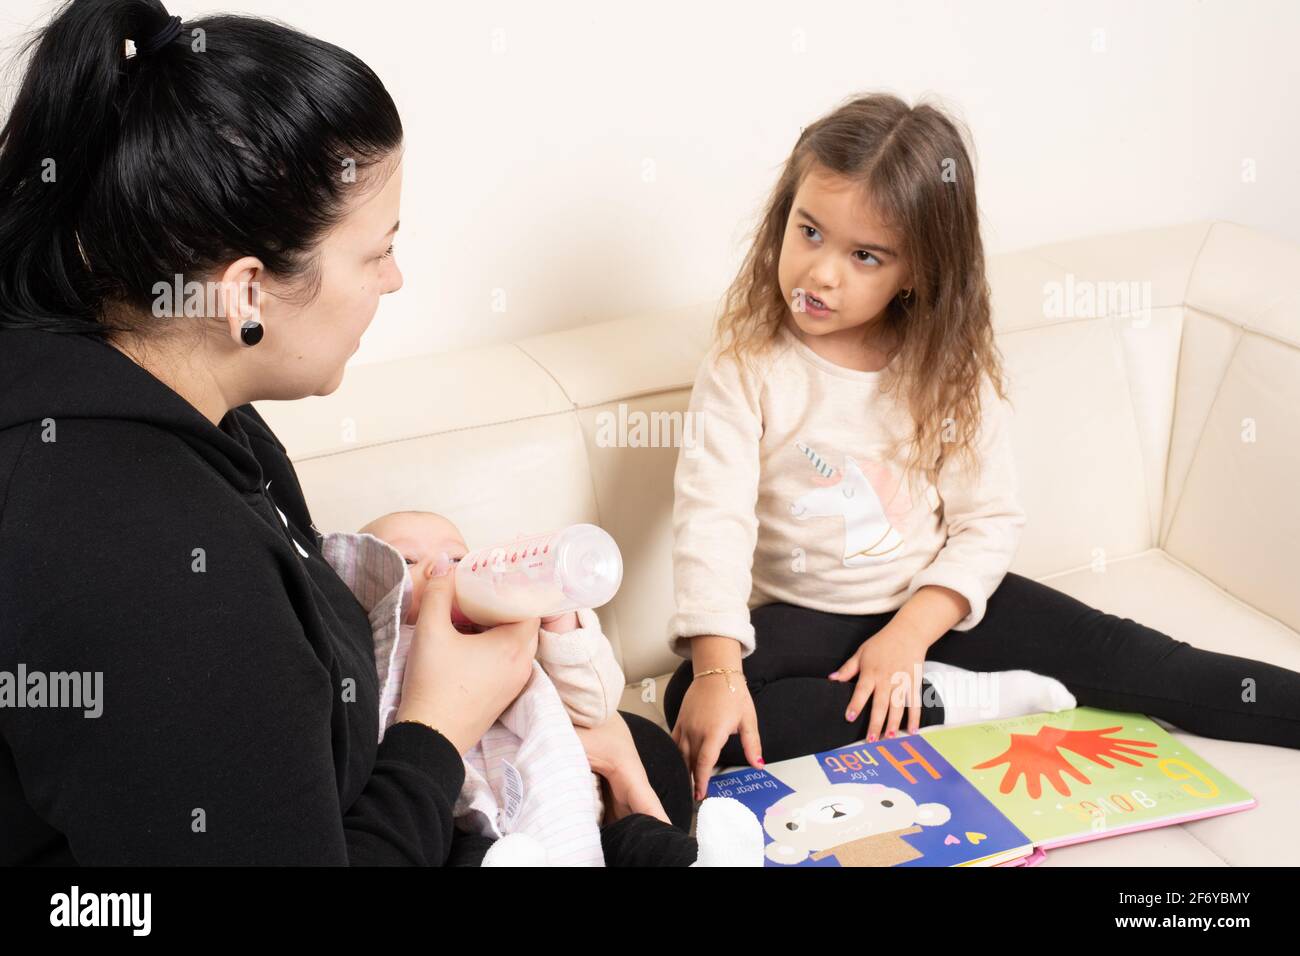 Ragazza di quattro anni che guarda il libro dell'immagine e che parla con la madre, che sta alimentando la sorella del bambino di 2 mesi Foto Stock